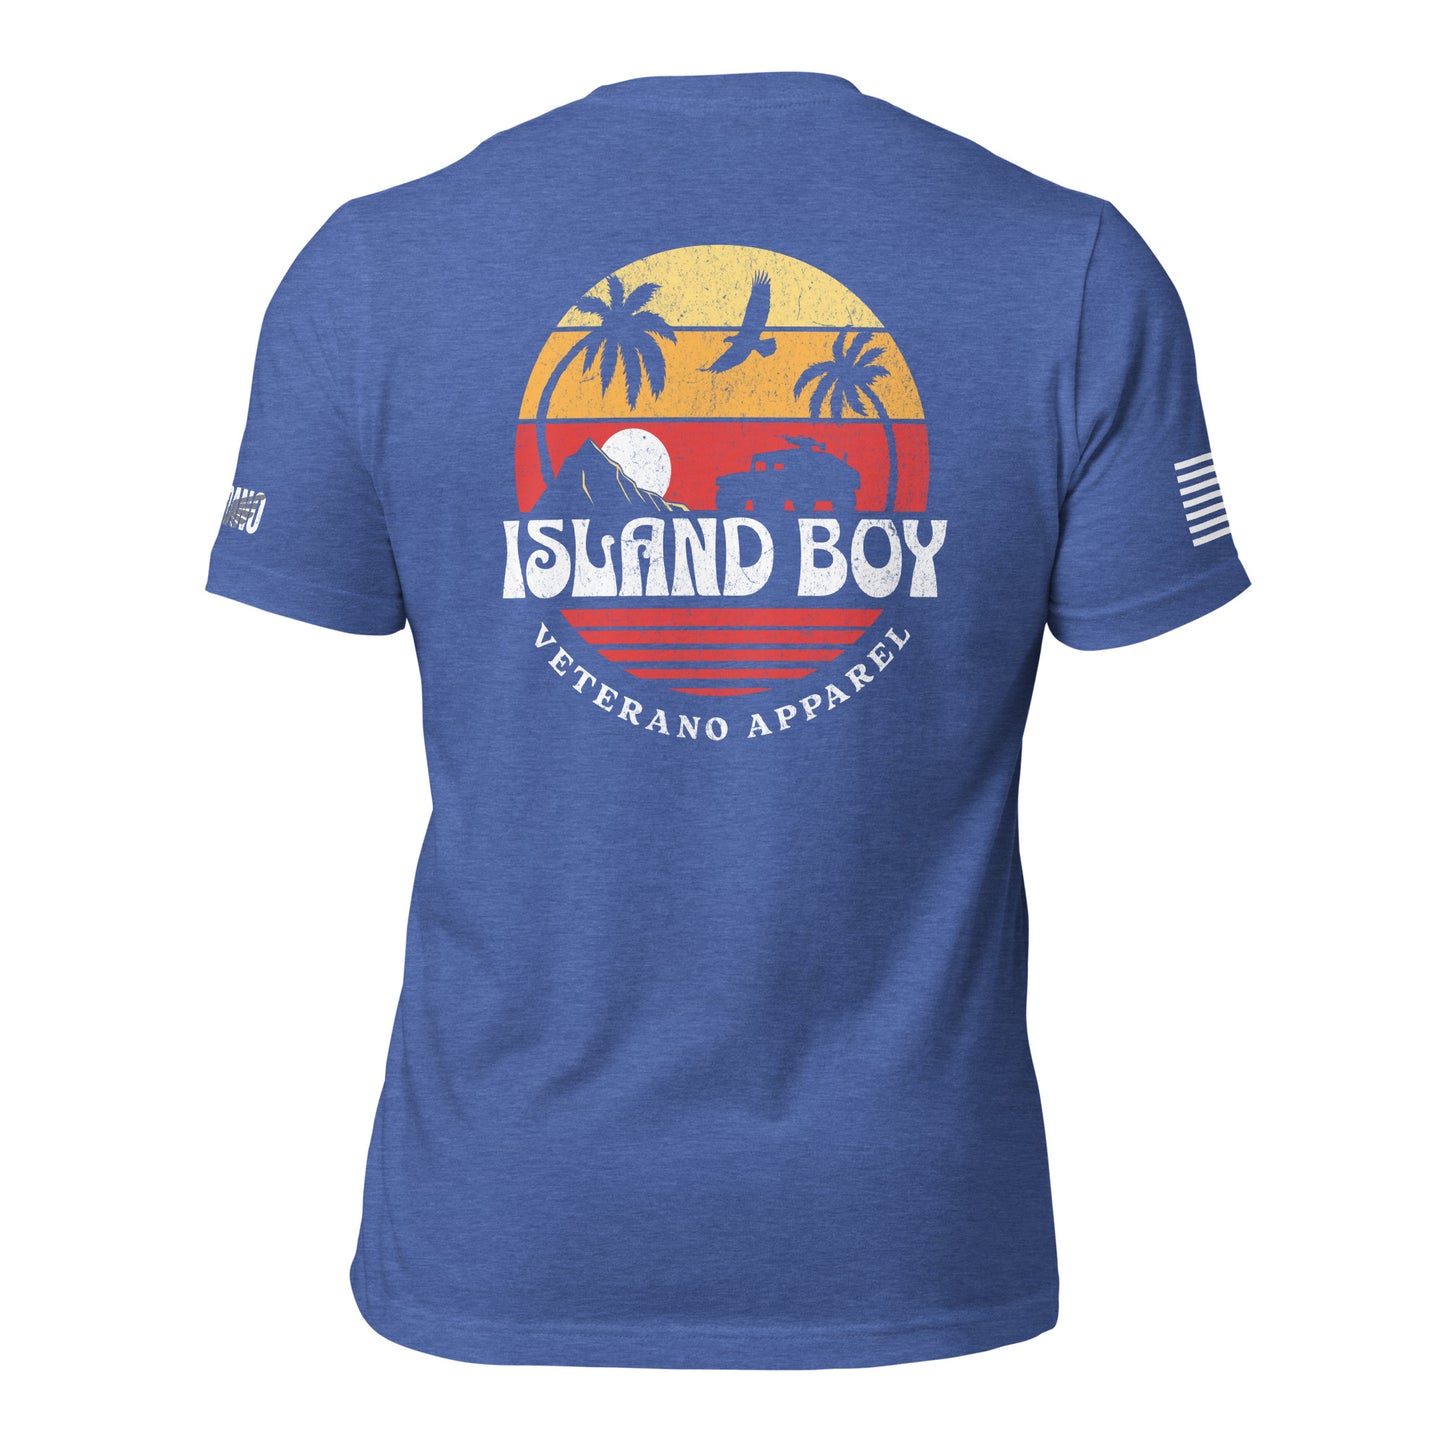 Island Boy T-Shirt